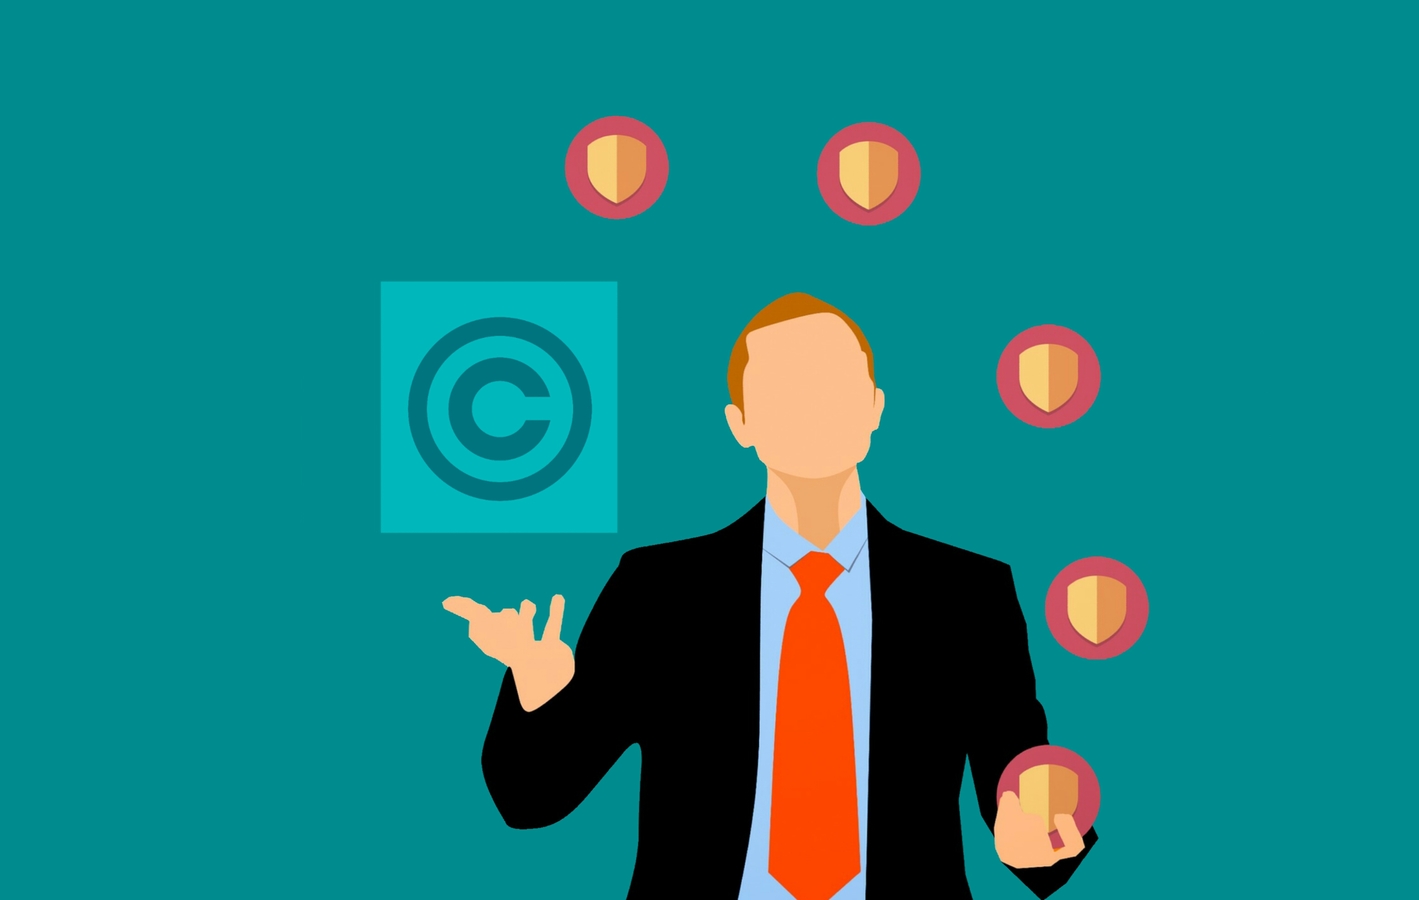 Lire la suite à propos de l’article Symbole copyright, trademark, comment les utiliser?